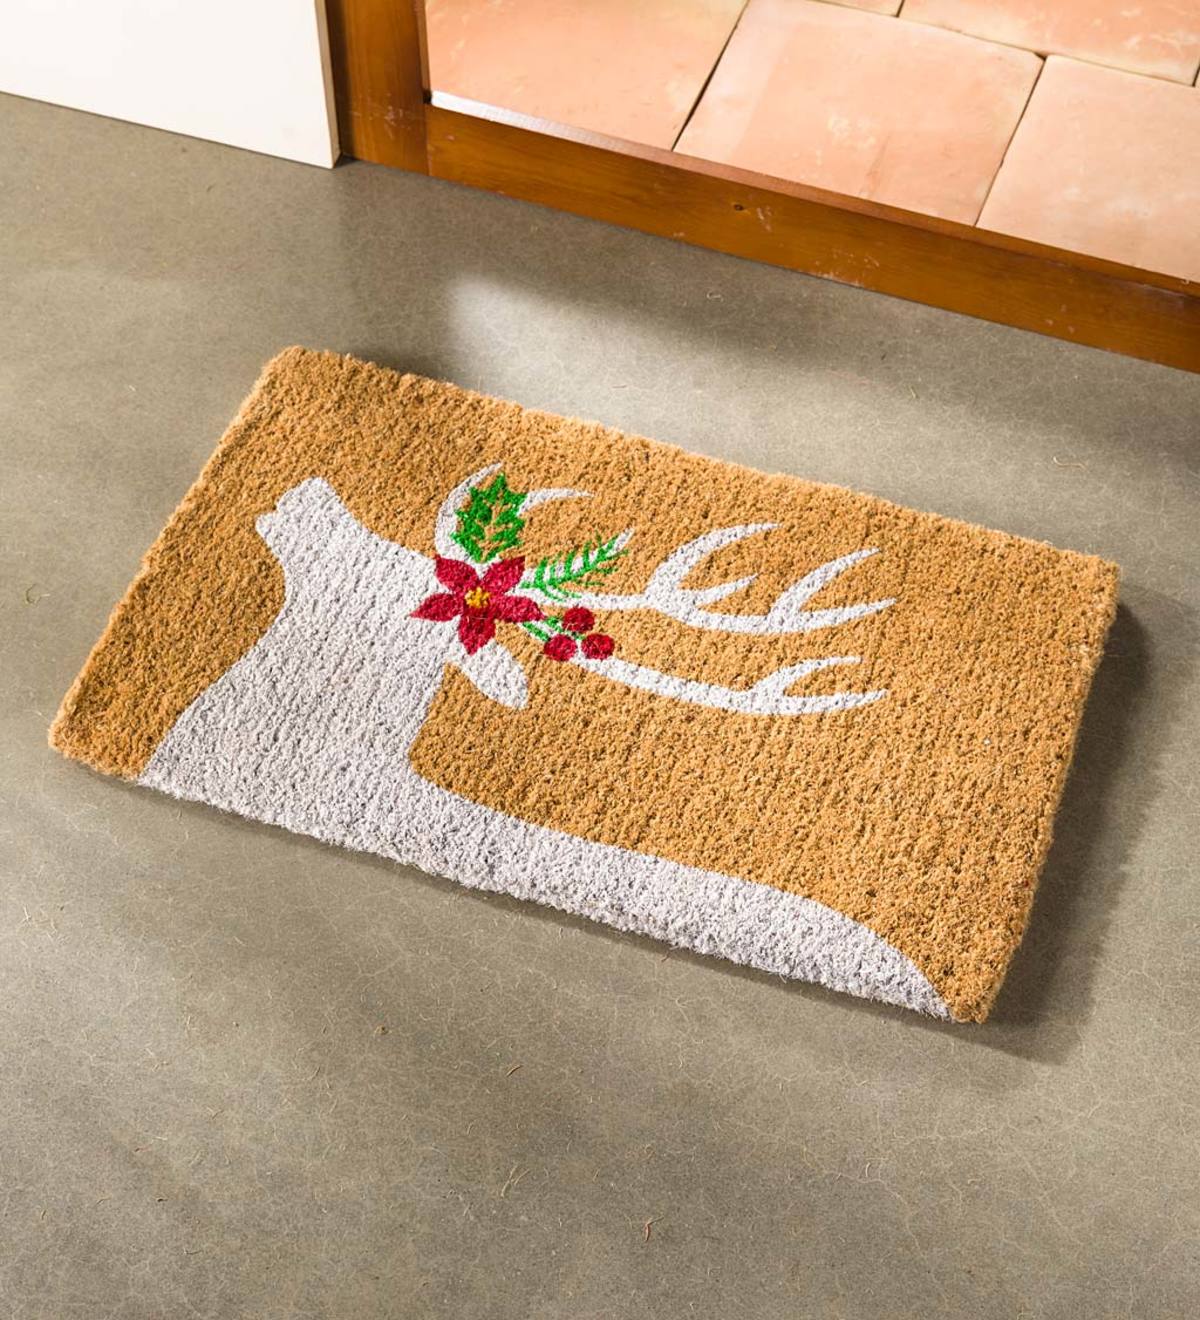 Snowy Deer Coir Doormat